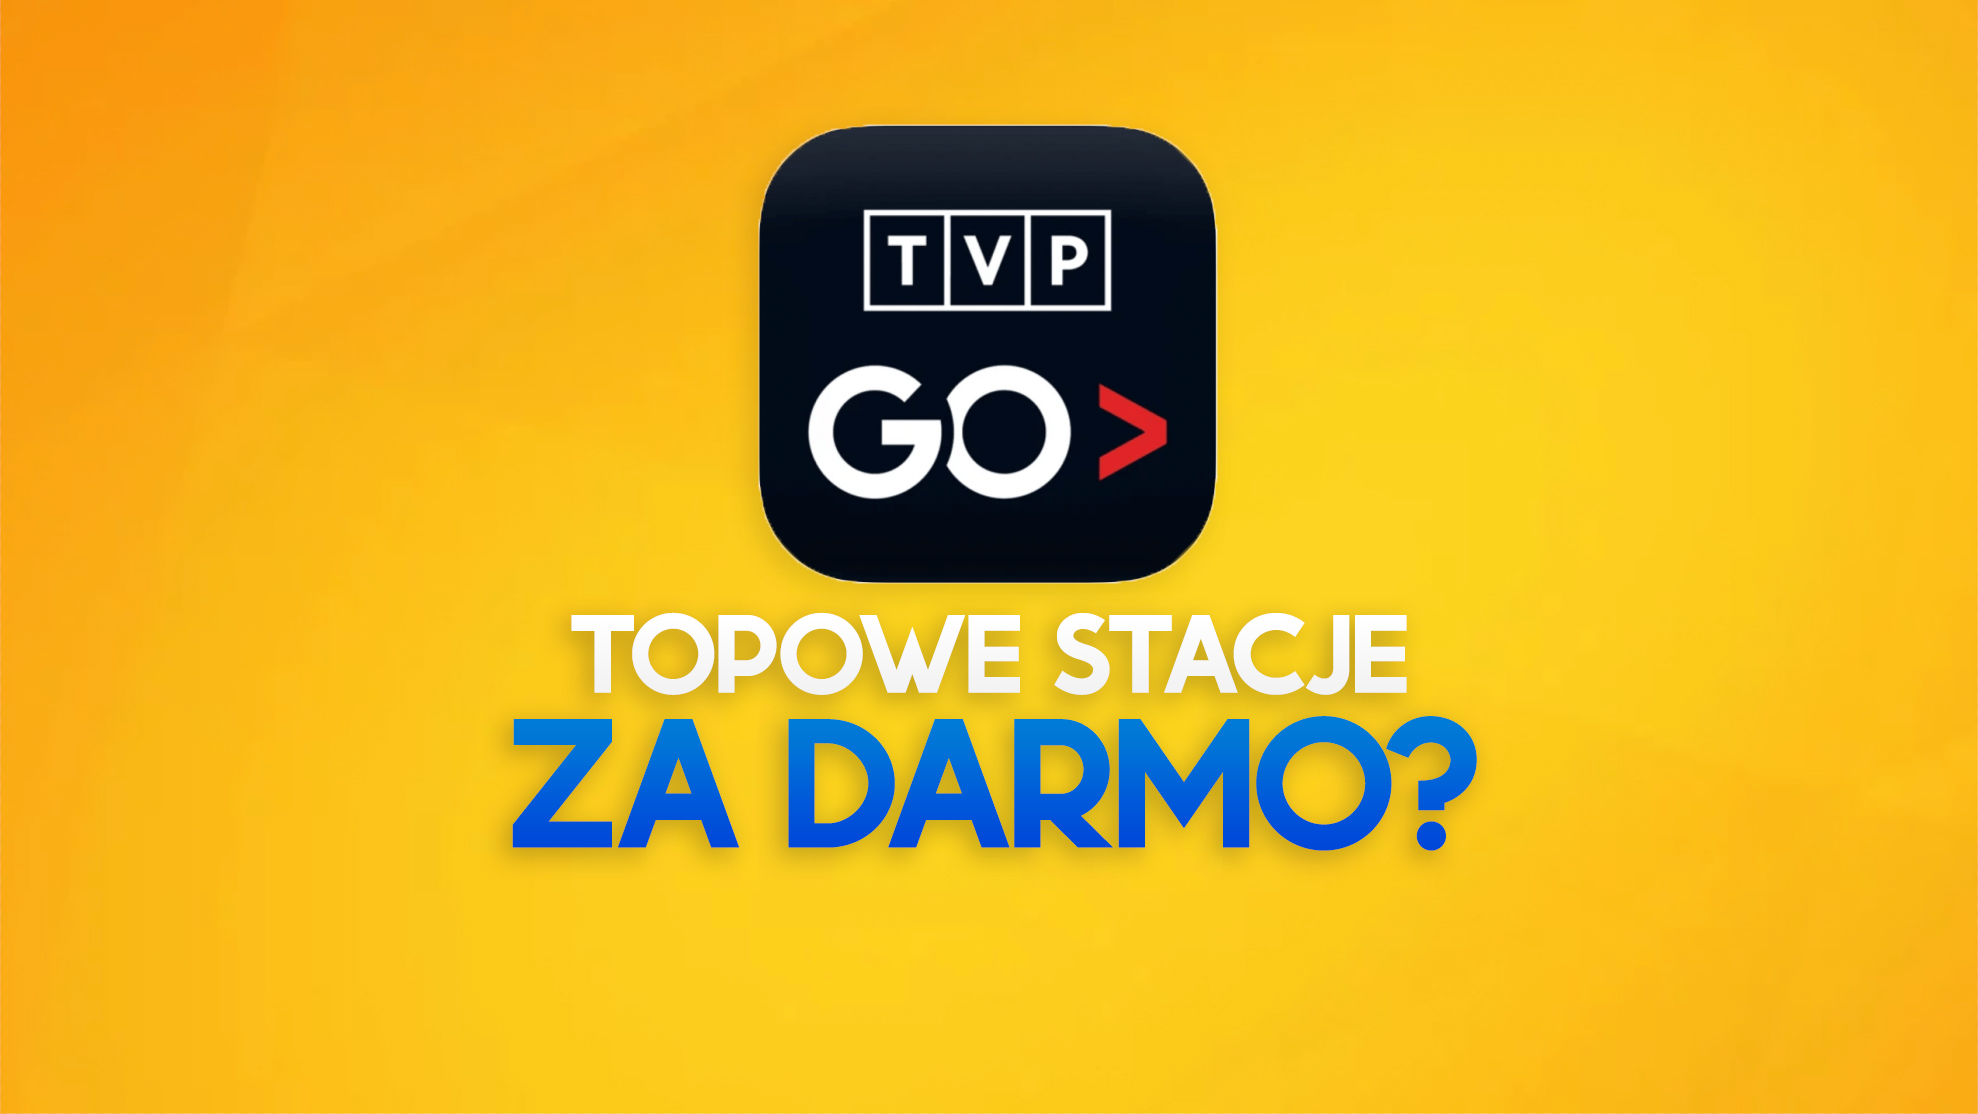 Nowe kanały w darmowej usłudze VoD TVP GO? Mogą tam trafić TVN i Polsat!